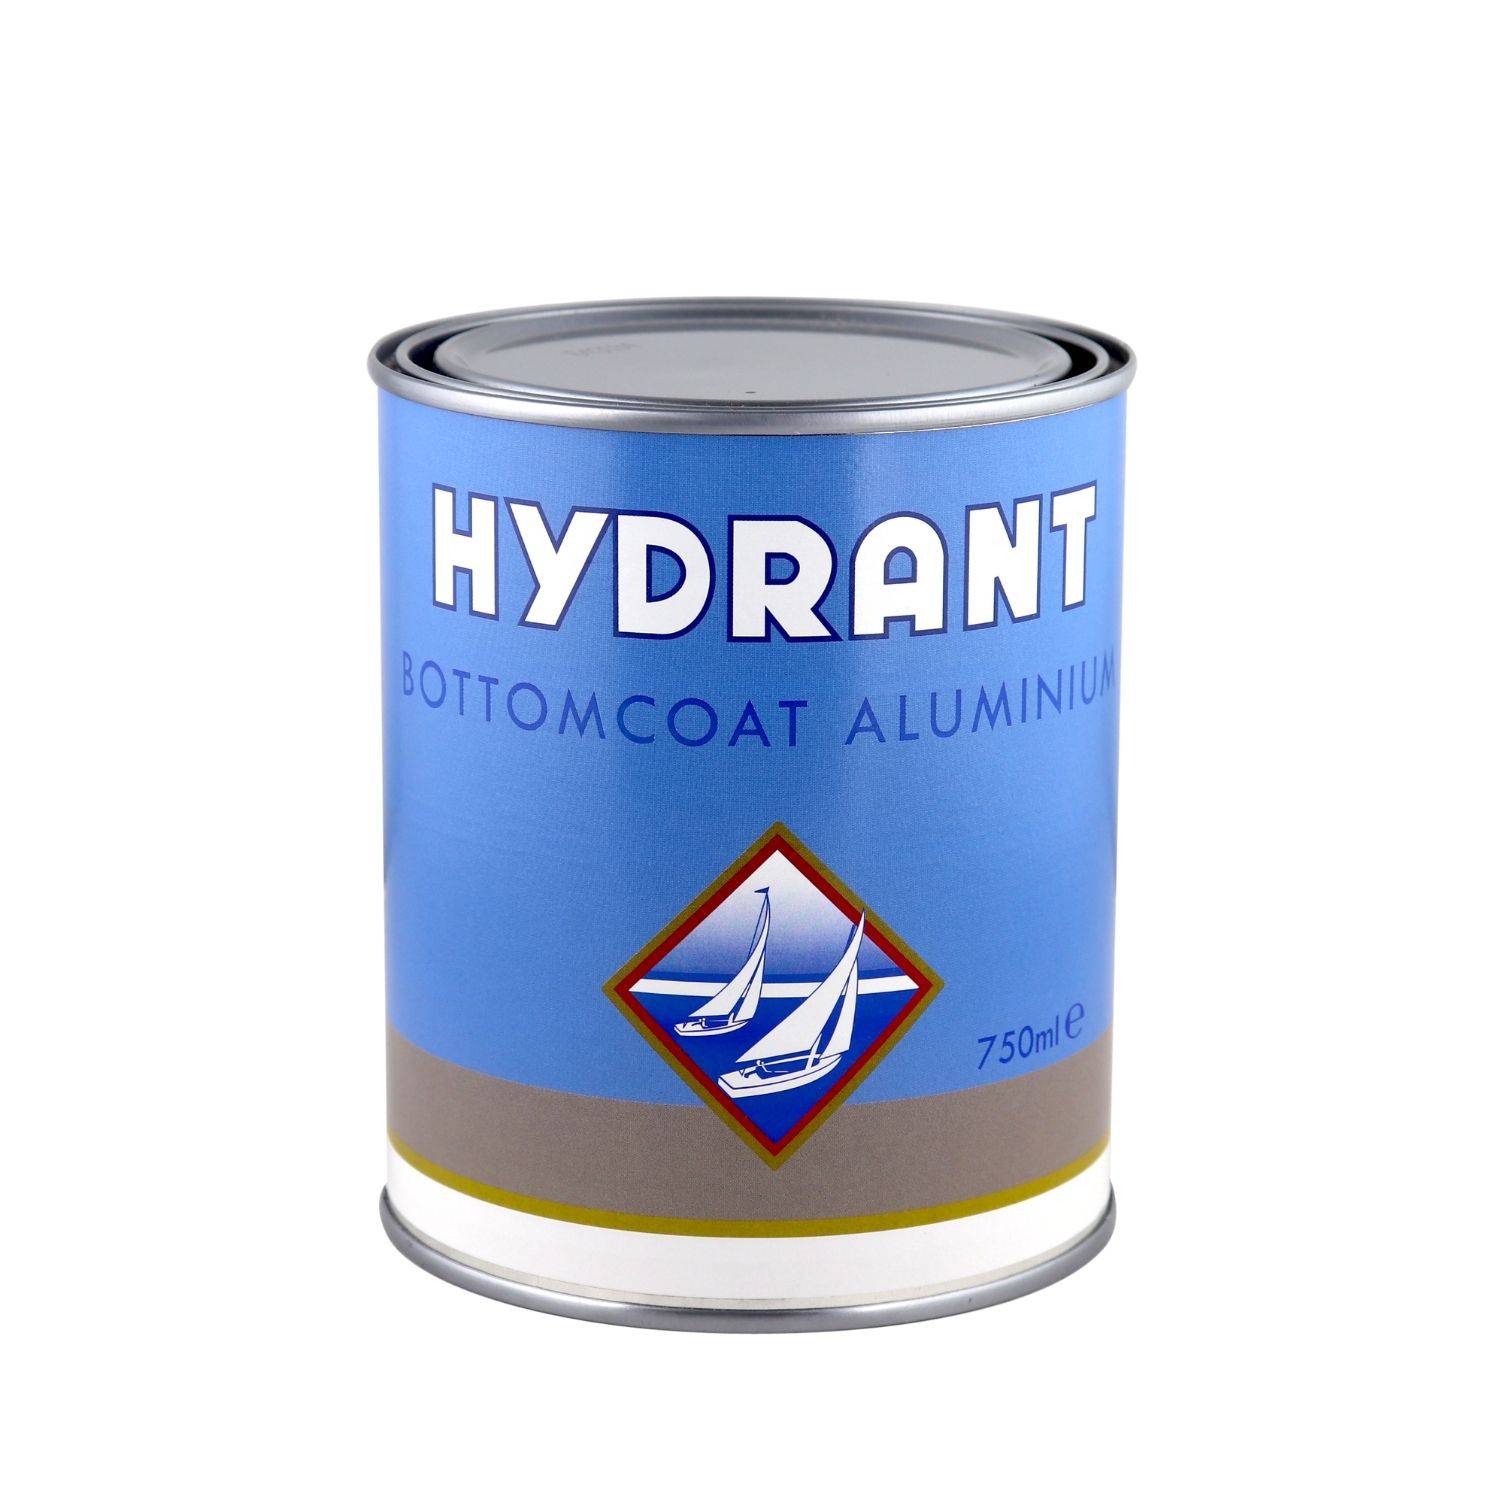 Hydrant bottomcoat aluminium